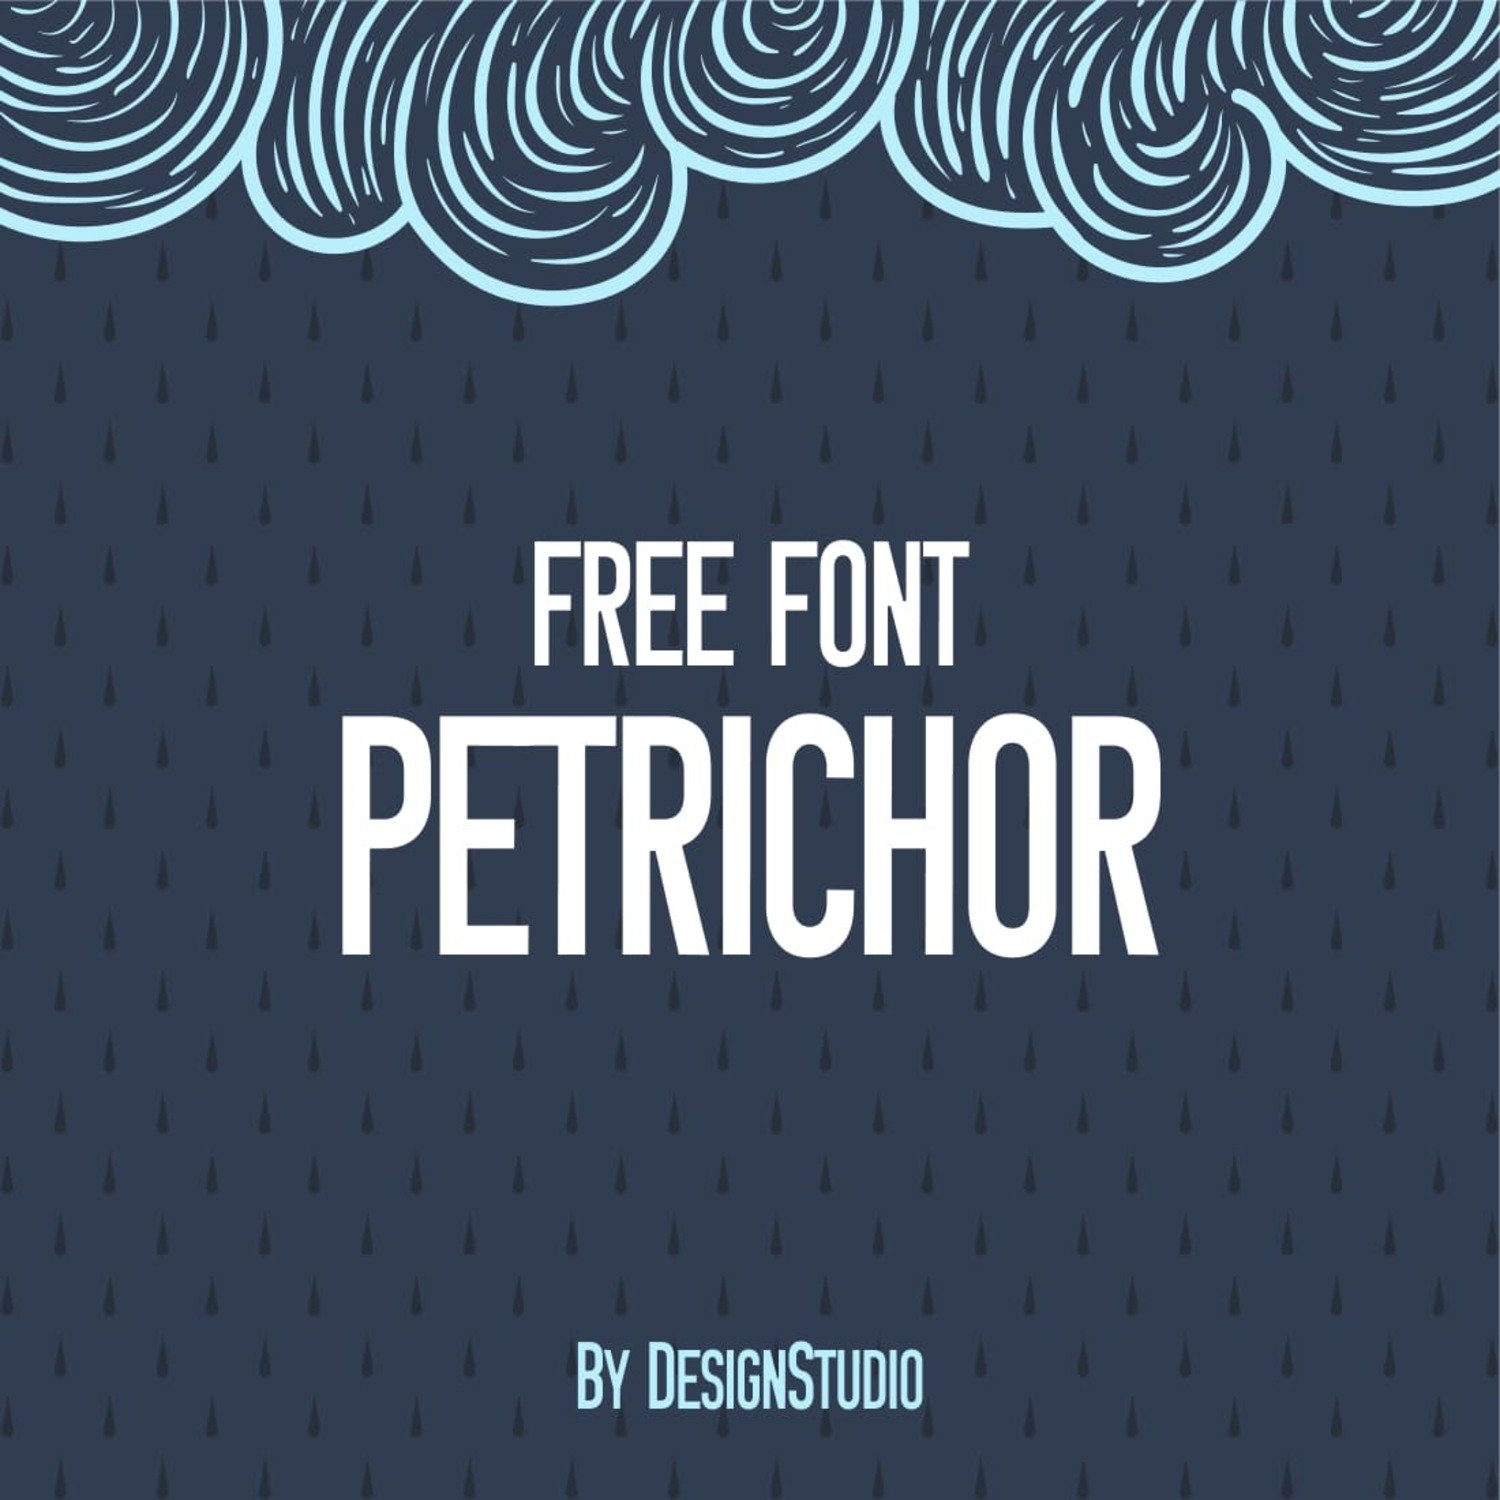 Petrichor Monospaced Sans Serif Font main cover.